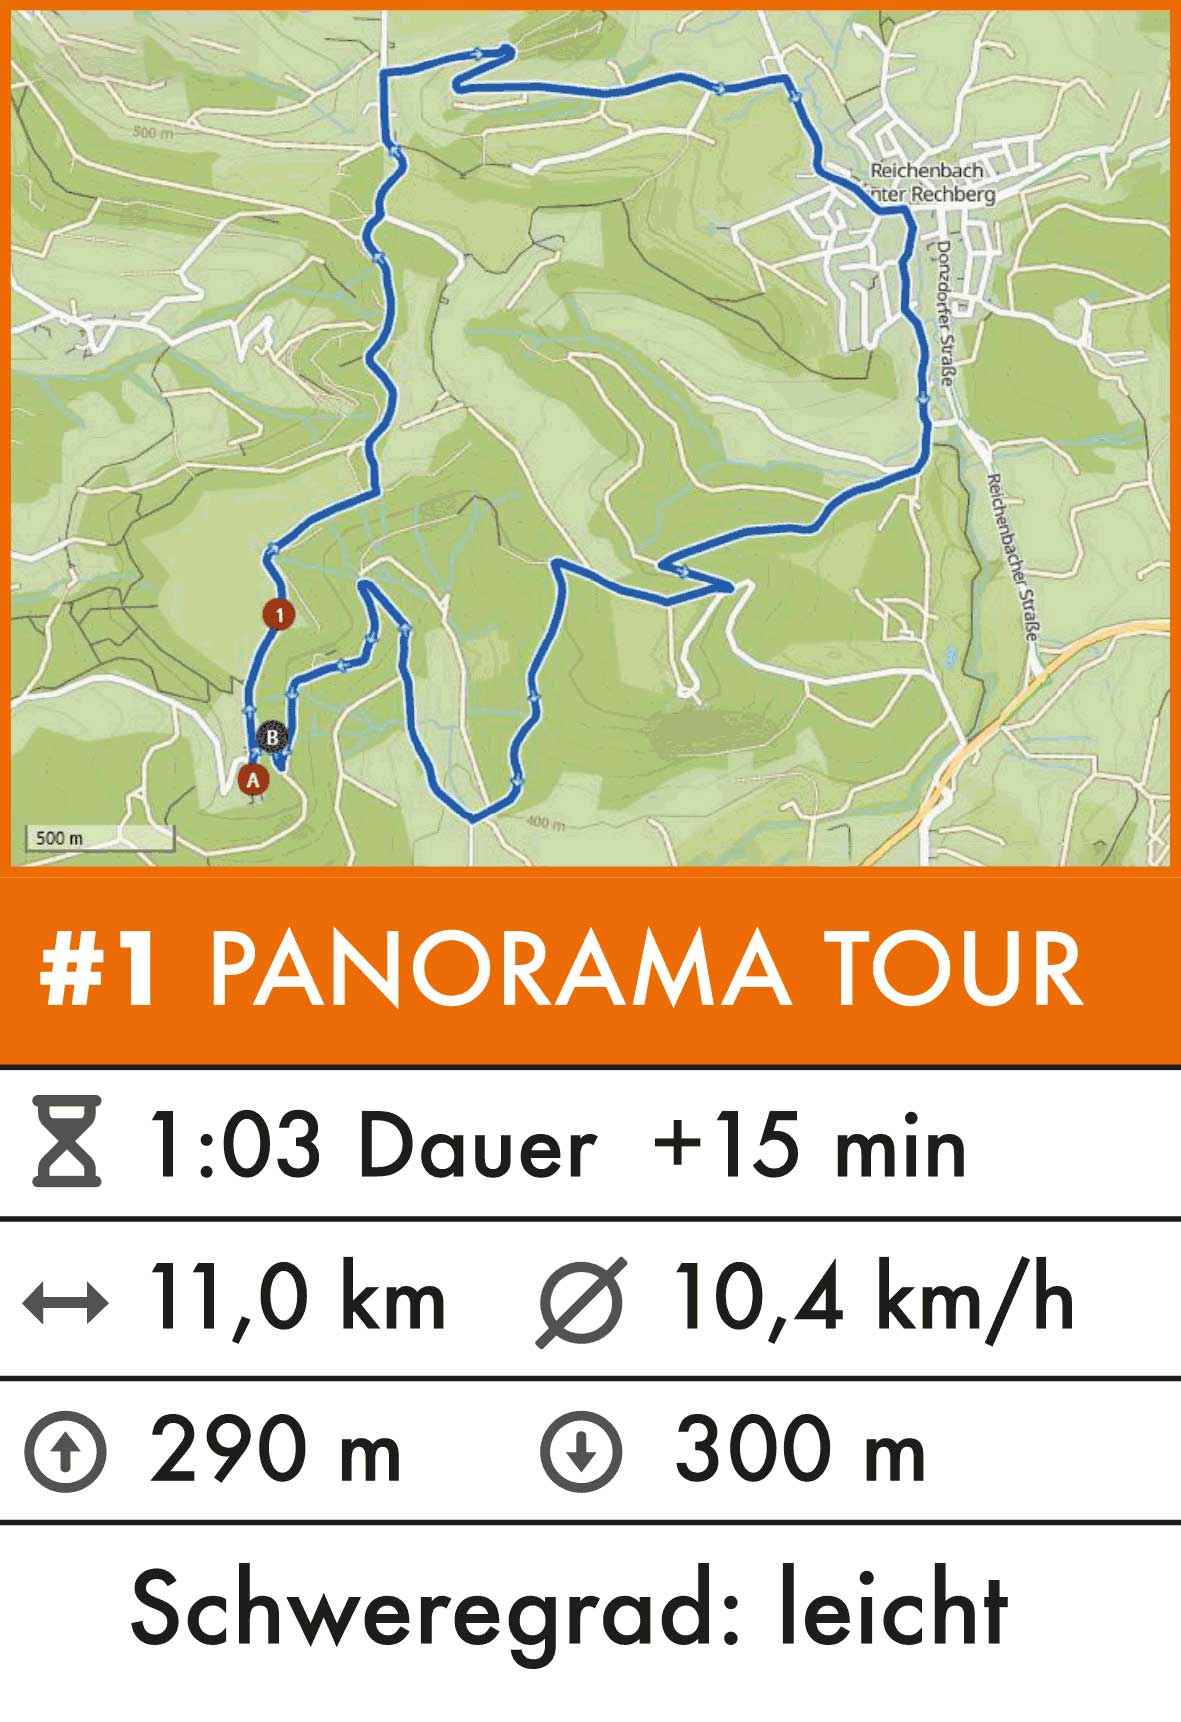 /panorama_tour.jpg